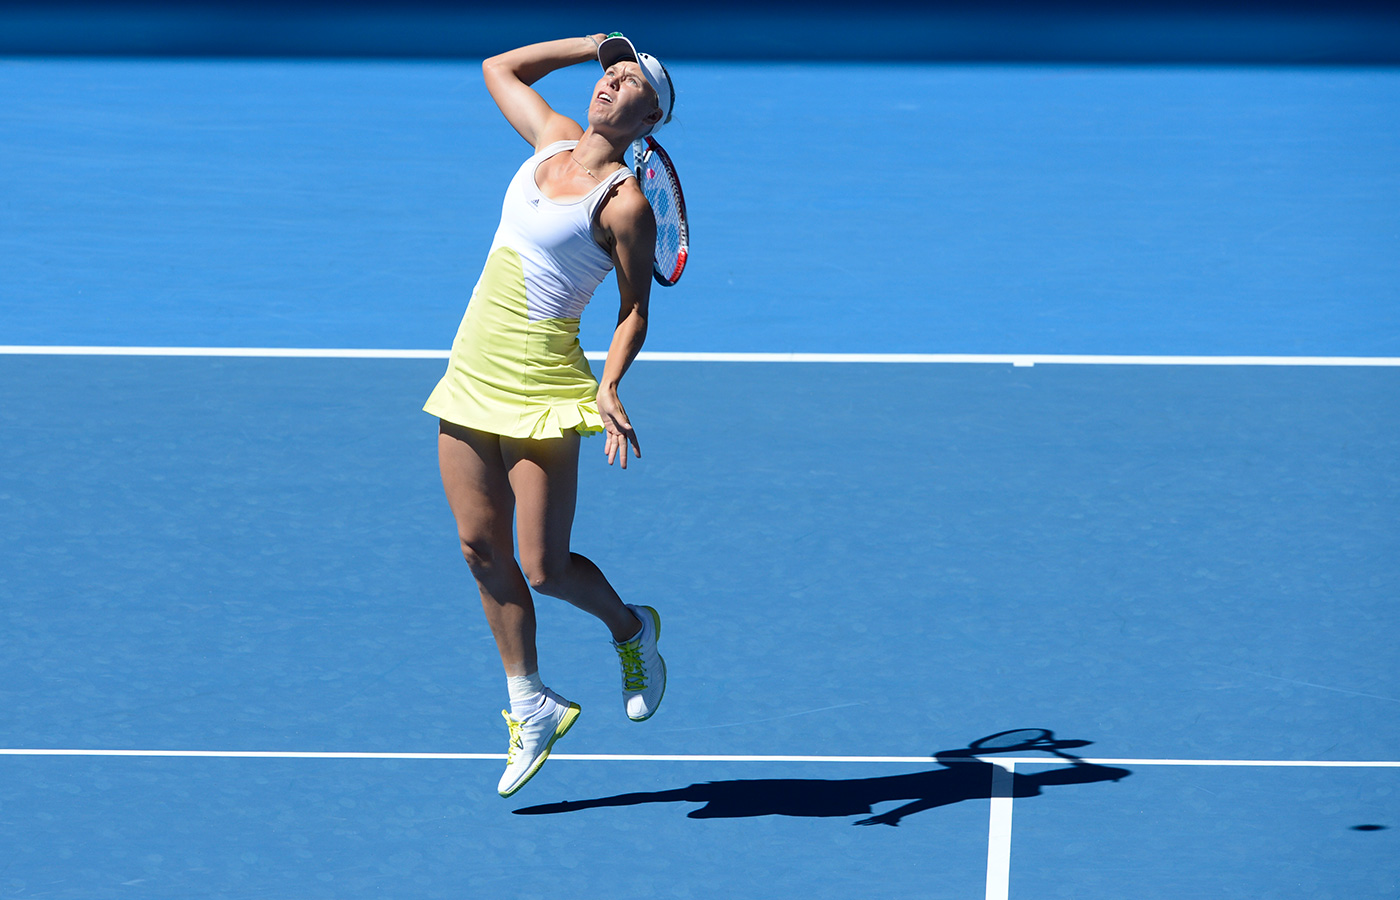 Australian Open 2013